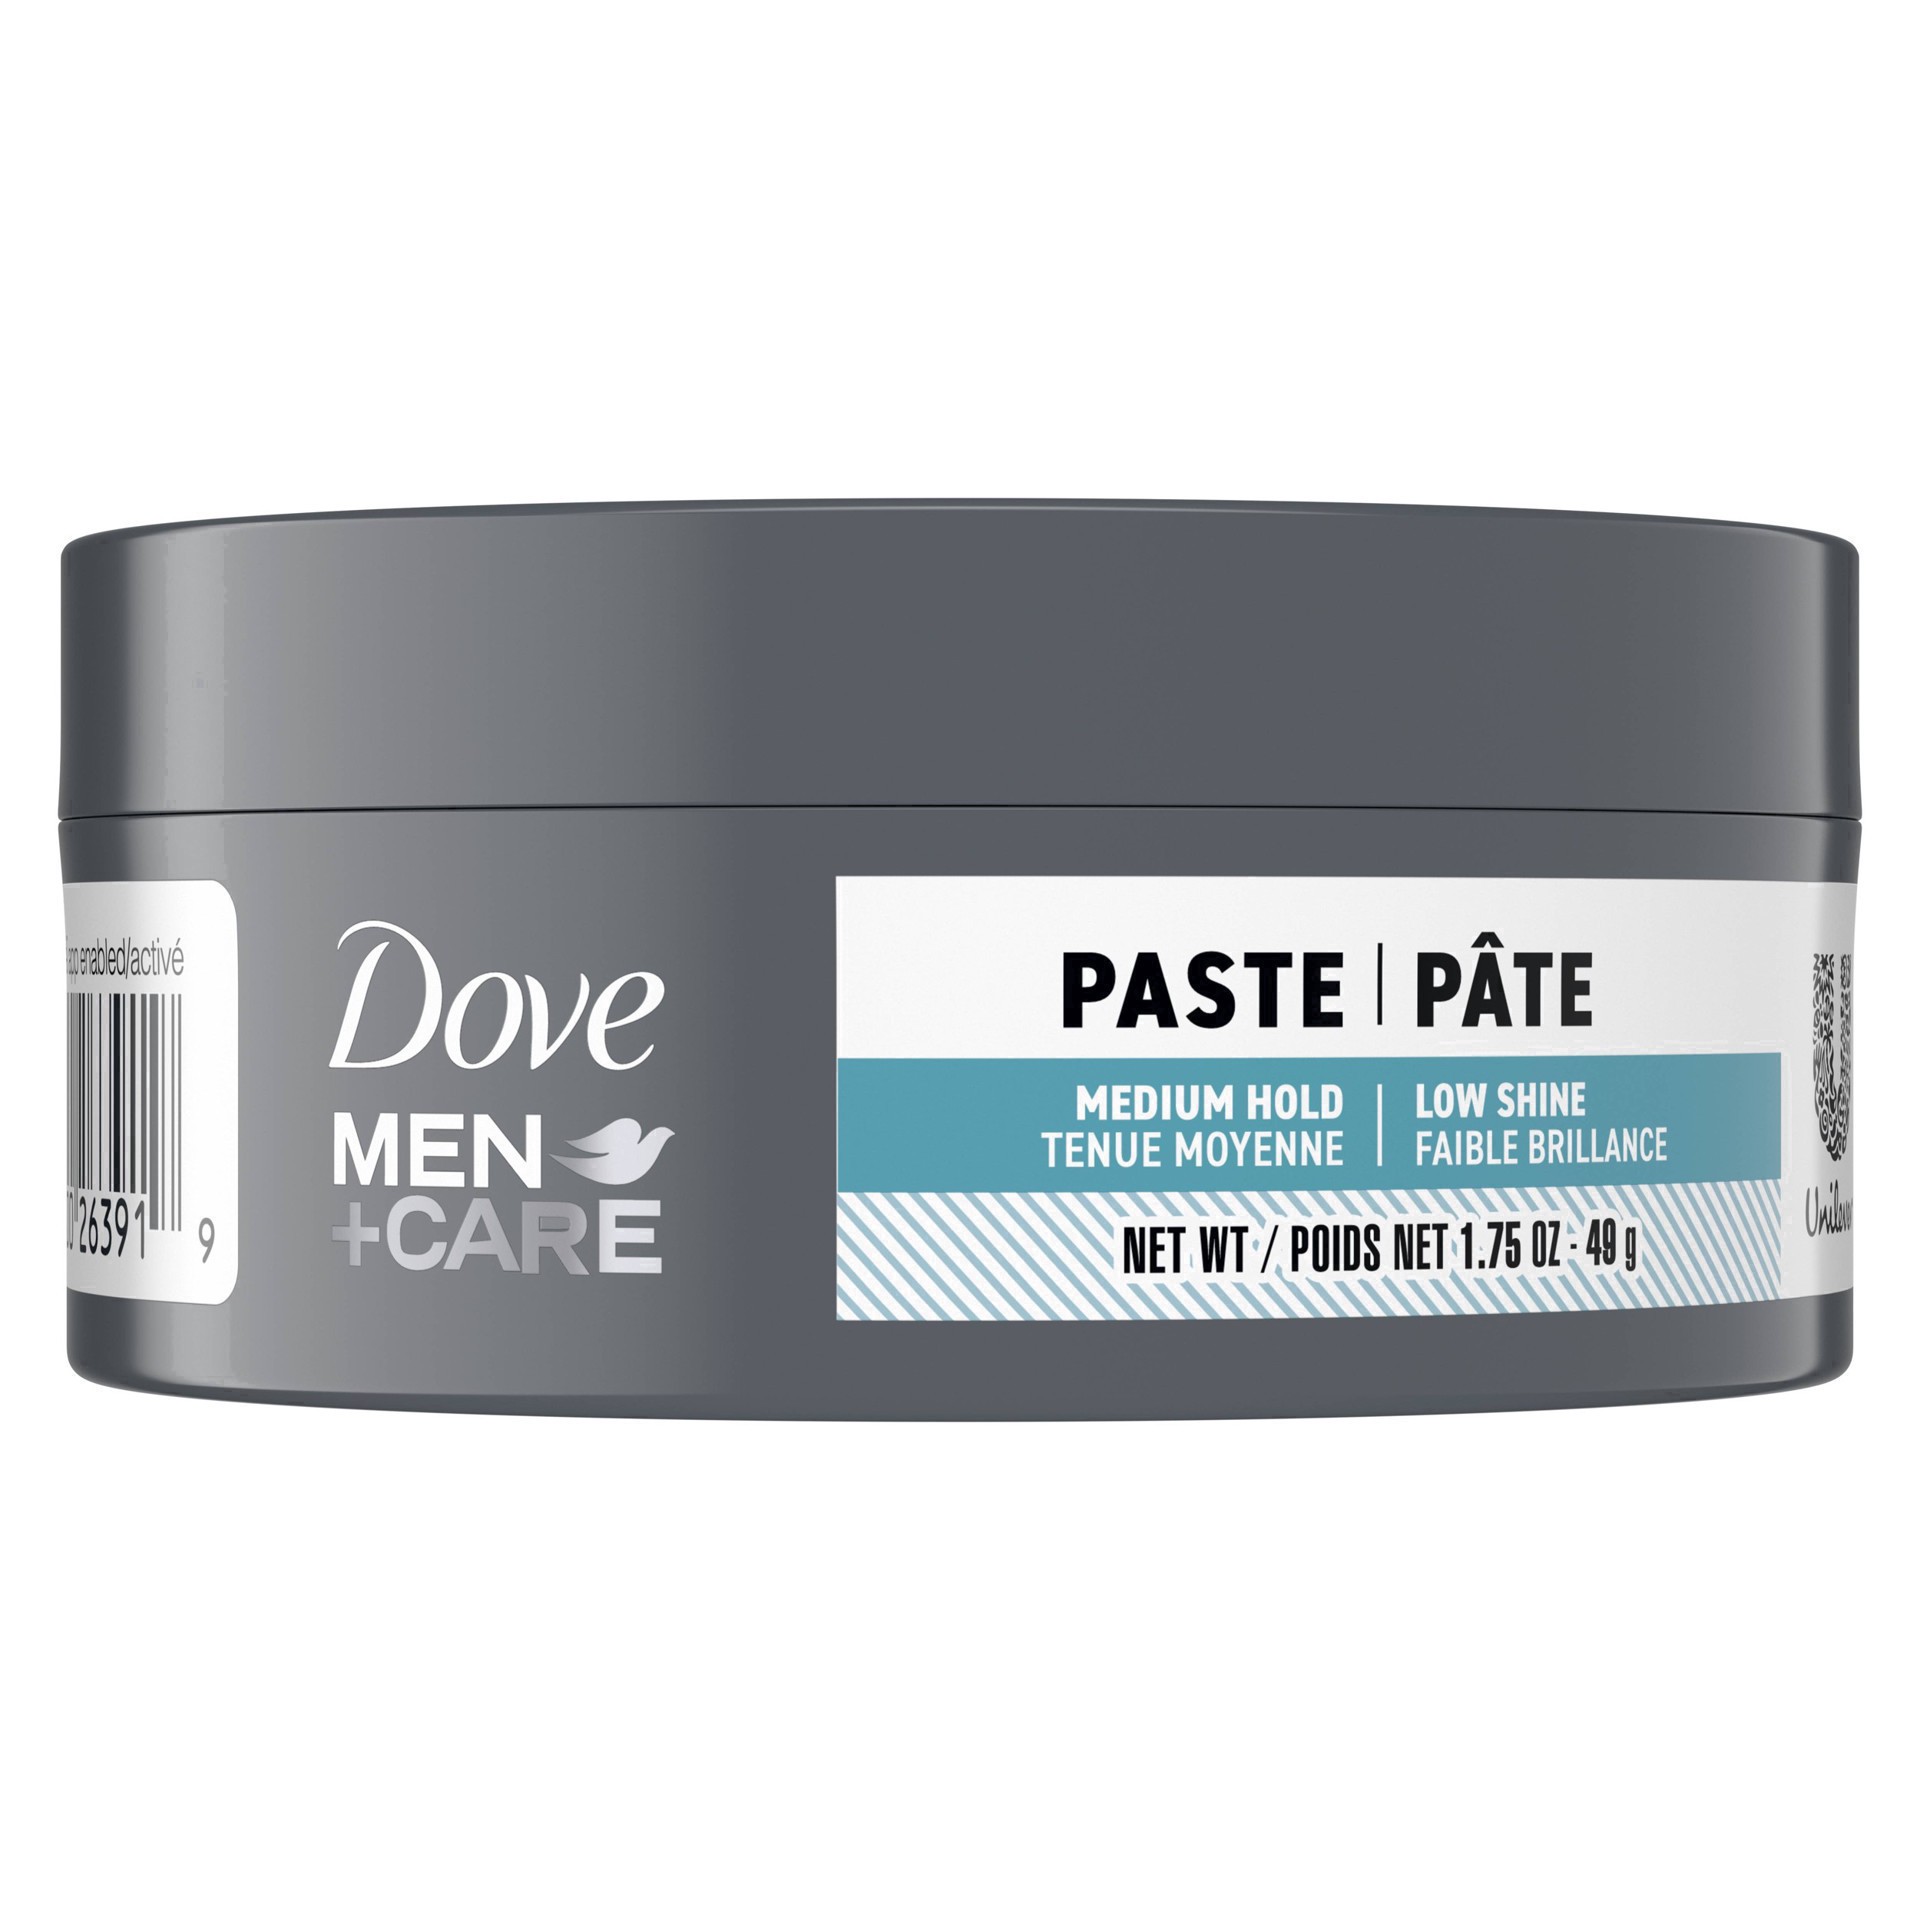 slide 6 of 100, Dove Men+Care Medium Hold Hair Styling Paste - 1.75oz, 1.75 oz